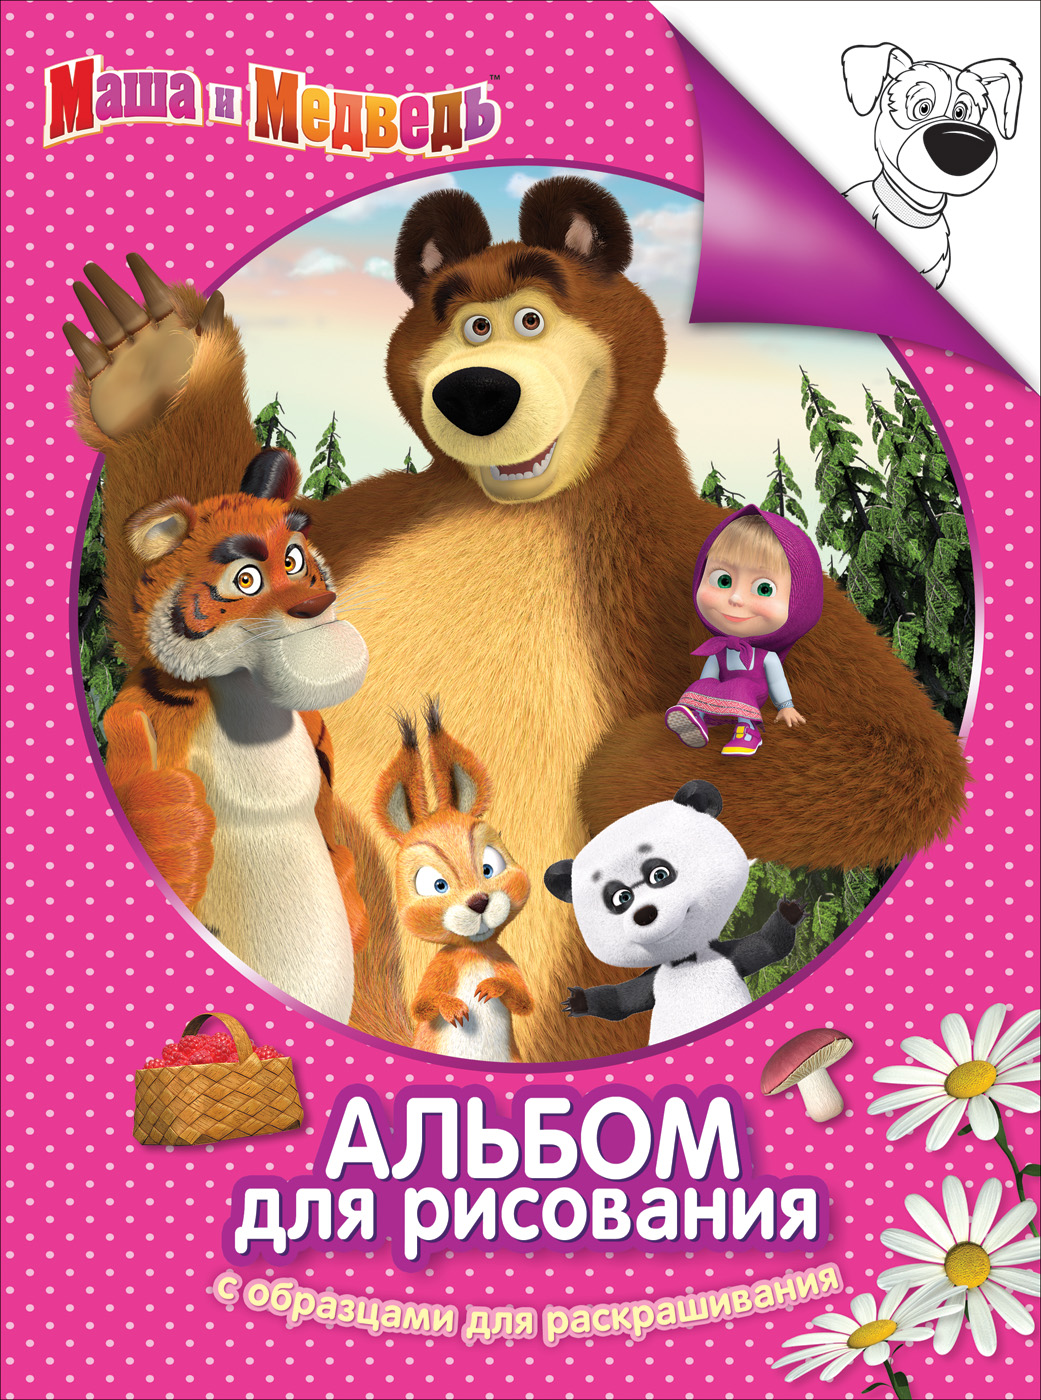 Альбом-раскраска 30915 Маша и Медведь розов Росмэн - Казань 